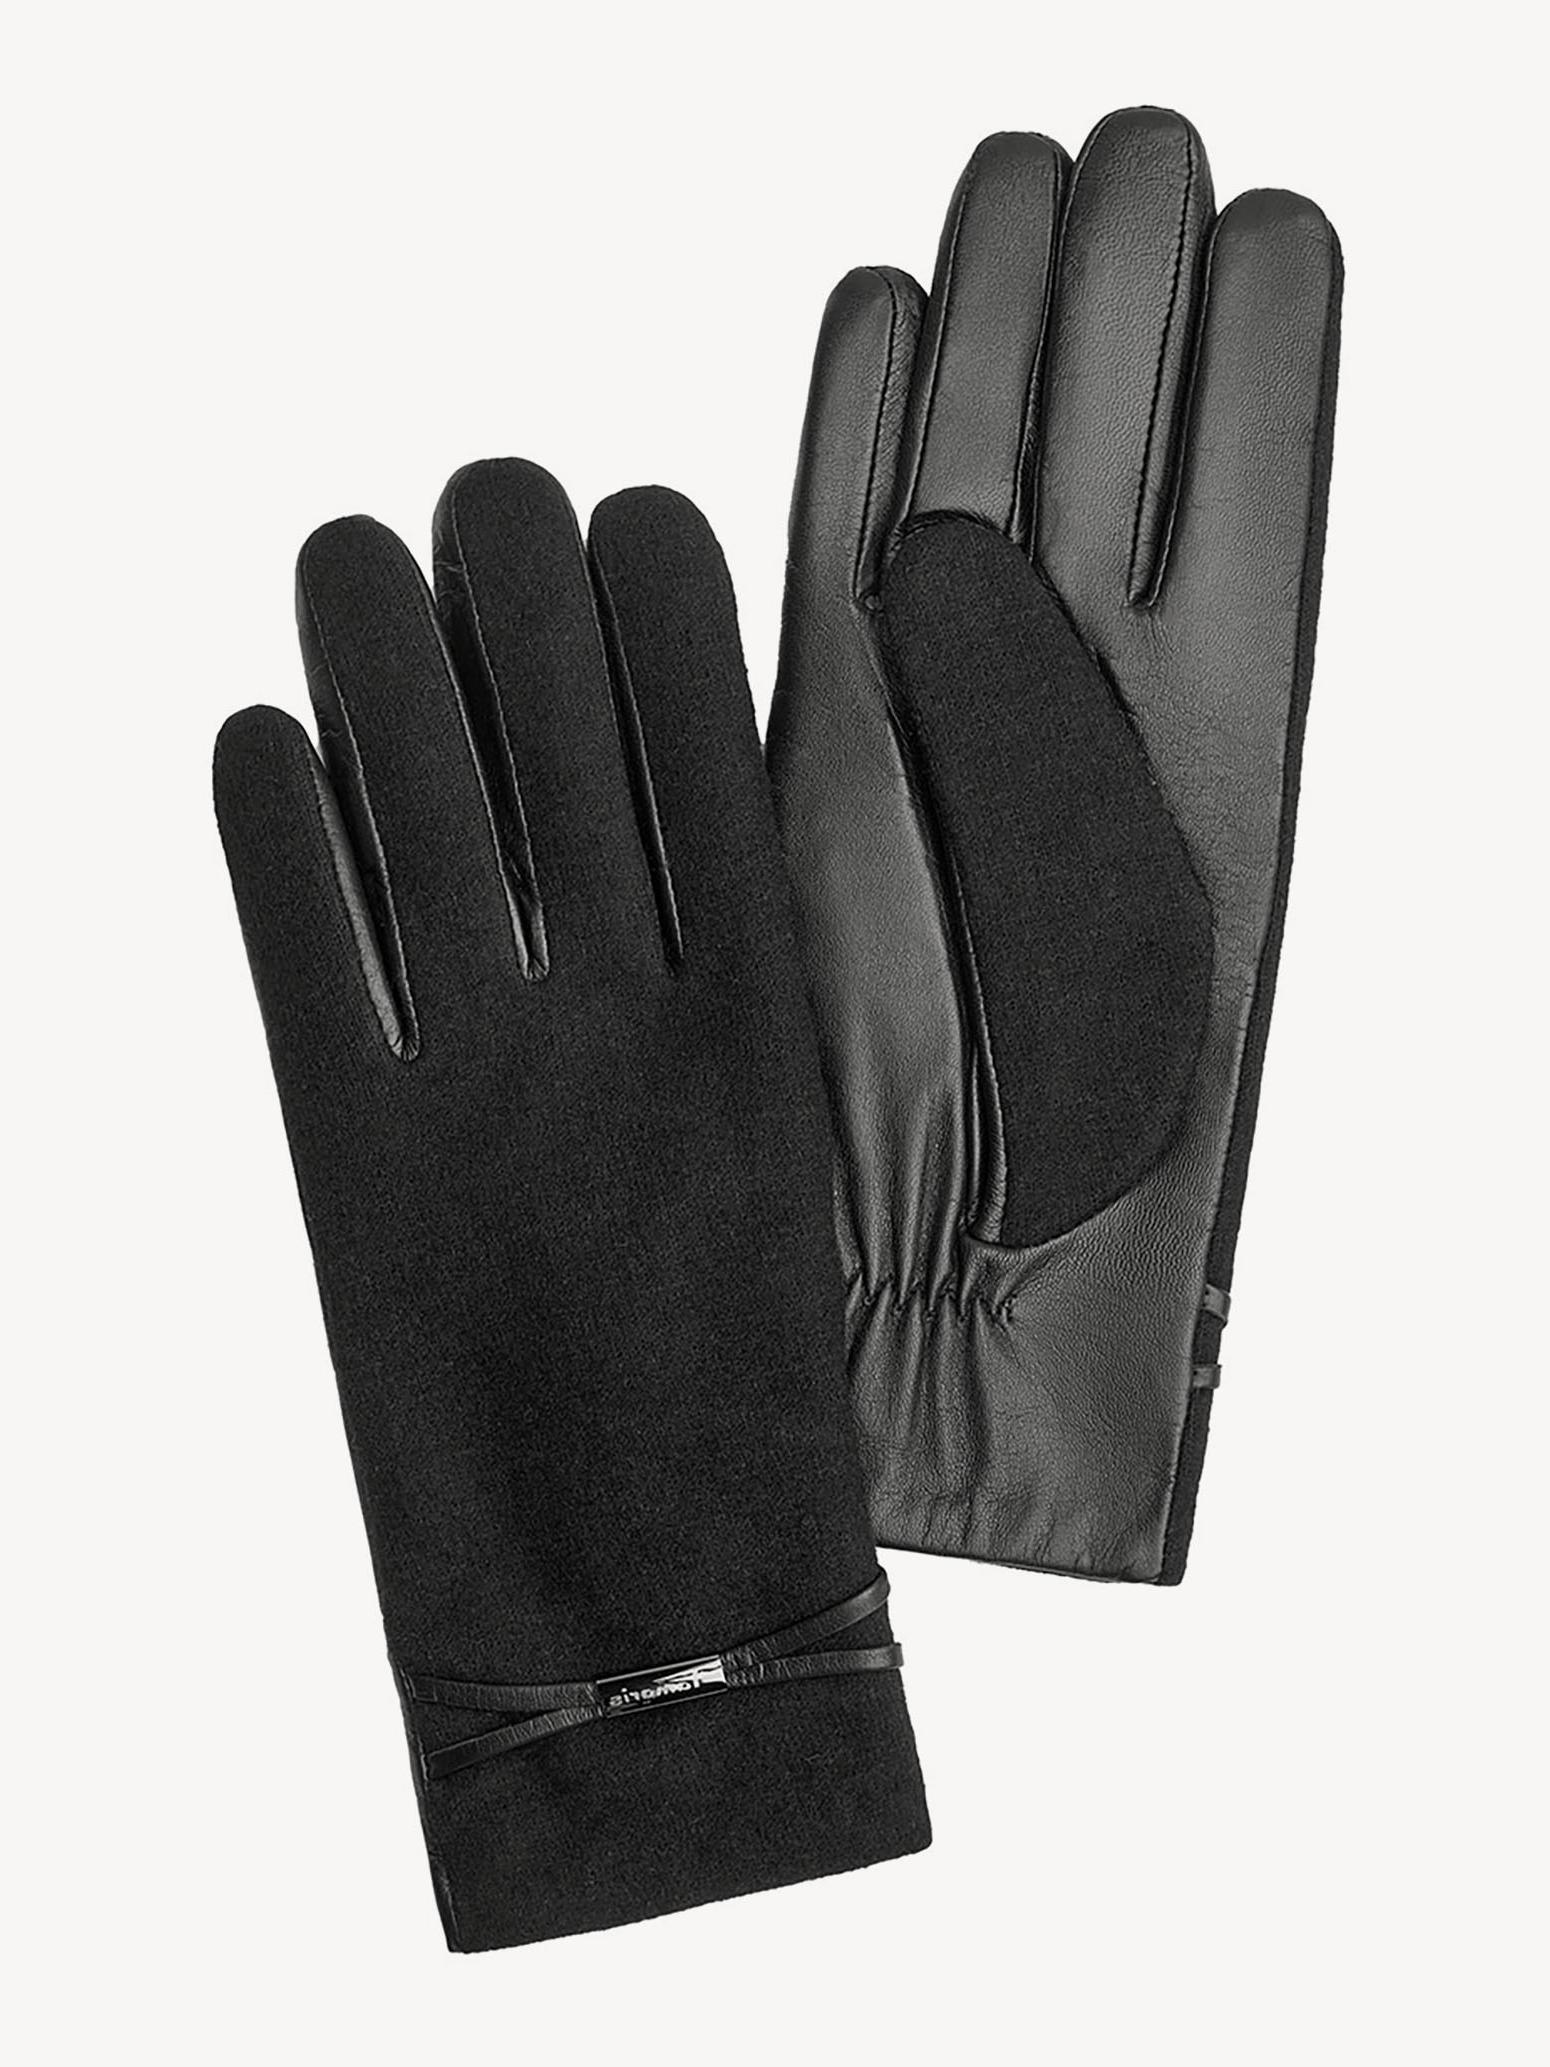 Перчатки женские Tamaris TM-0150-001 черные р. 7